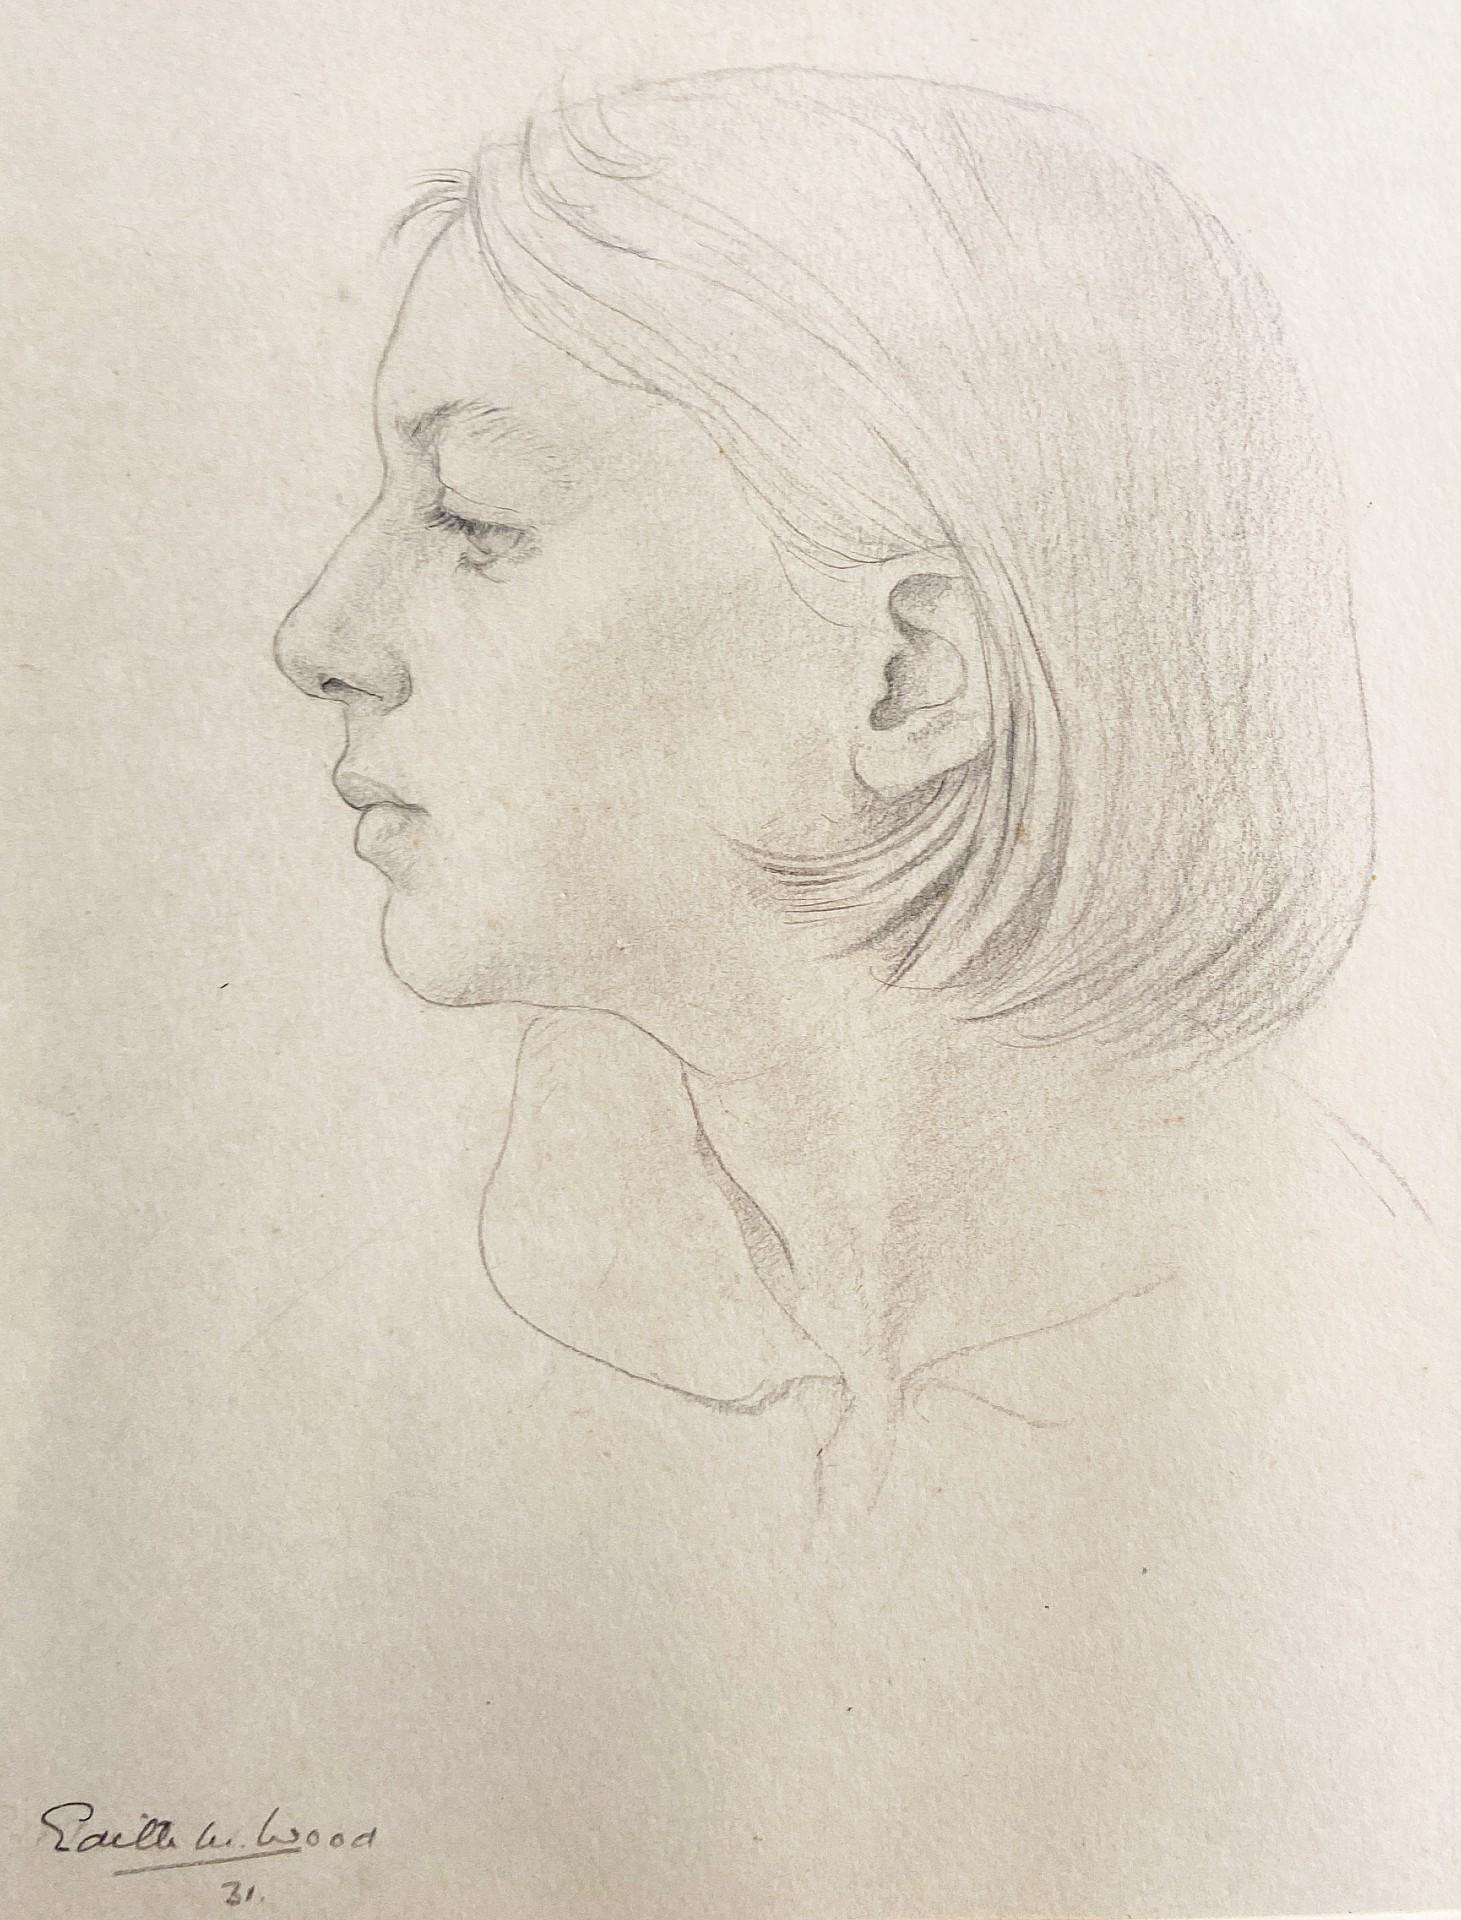 Edith W. Wood Portrait – Porträtstudie, Graphitkunstwerk des 20. Jahrhunderts, weibliche Künstlerin